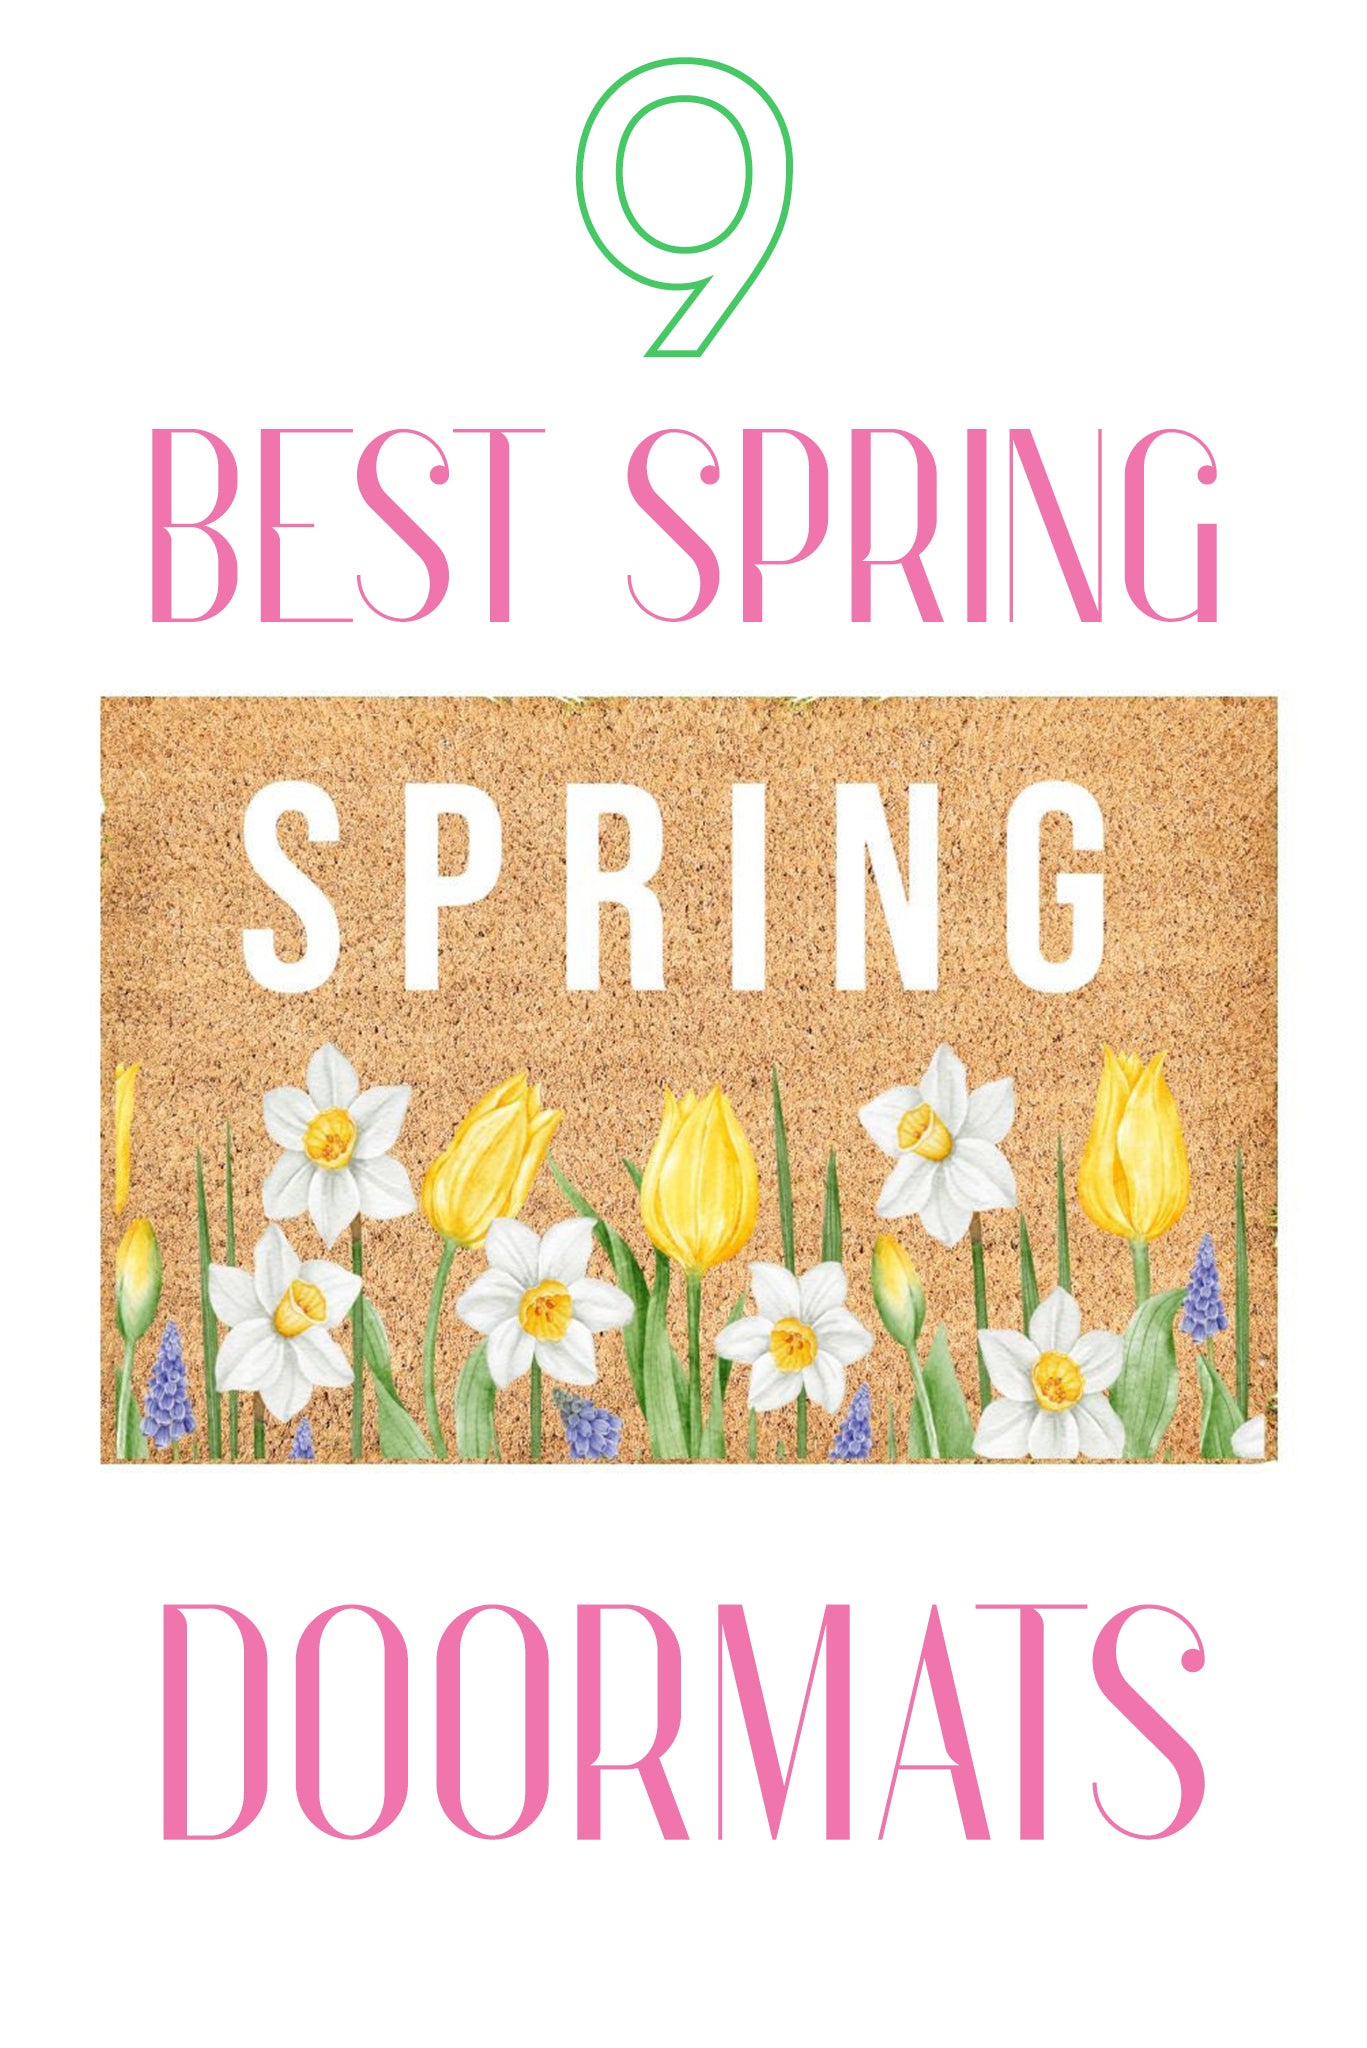 9 Best Spring Doormats - Pretty Collected